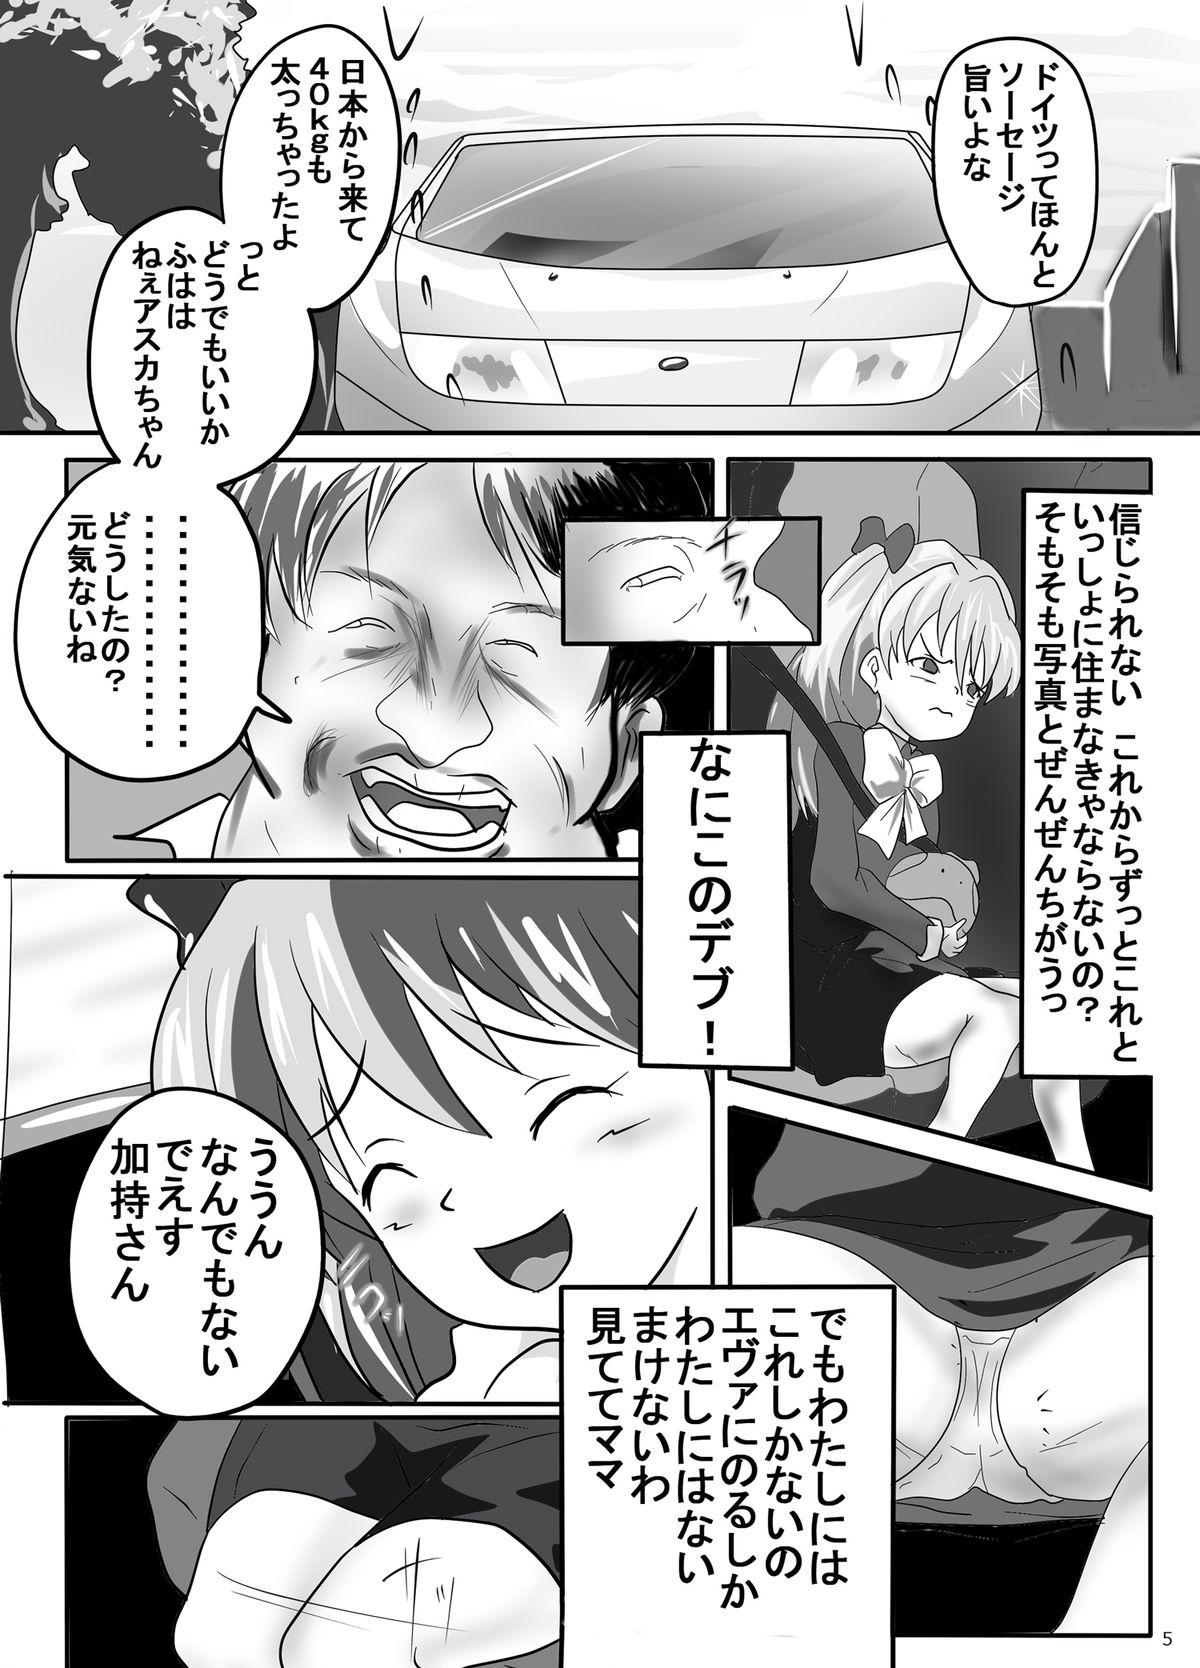 Banging Ito Asuna Rape - Neon genesis evangelion Blow - Page 5